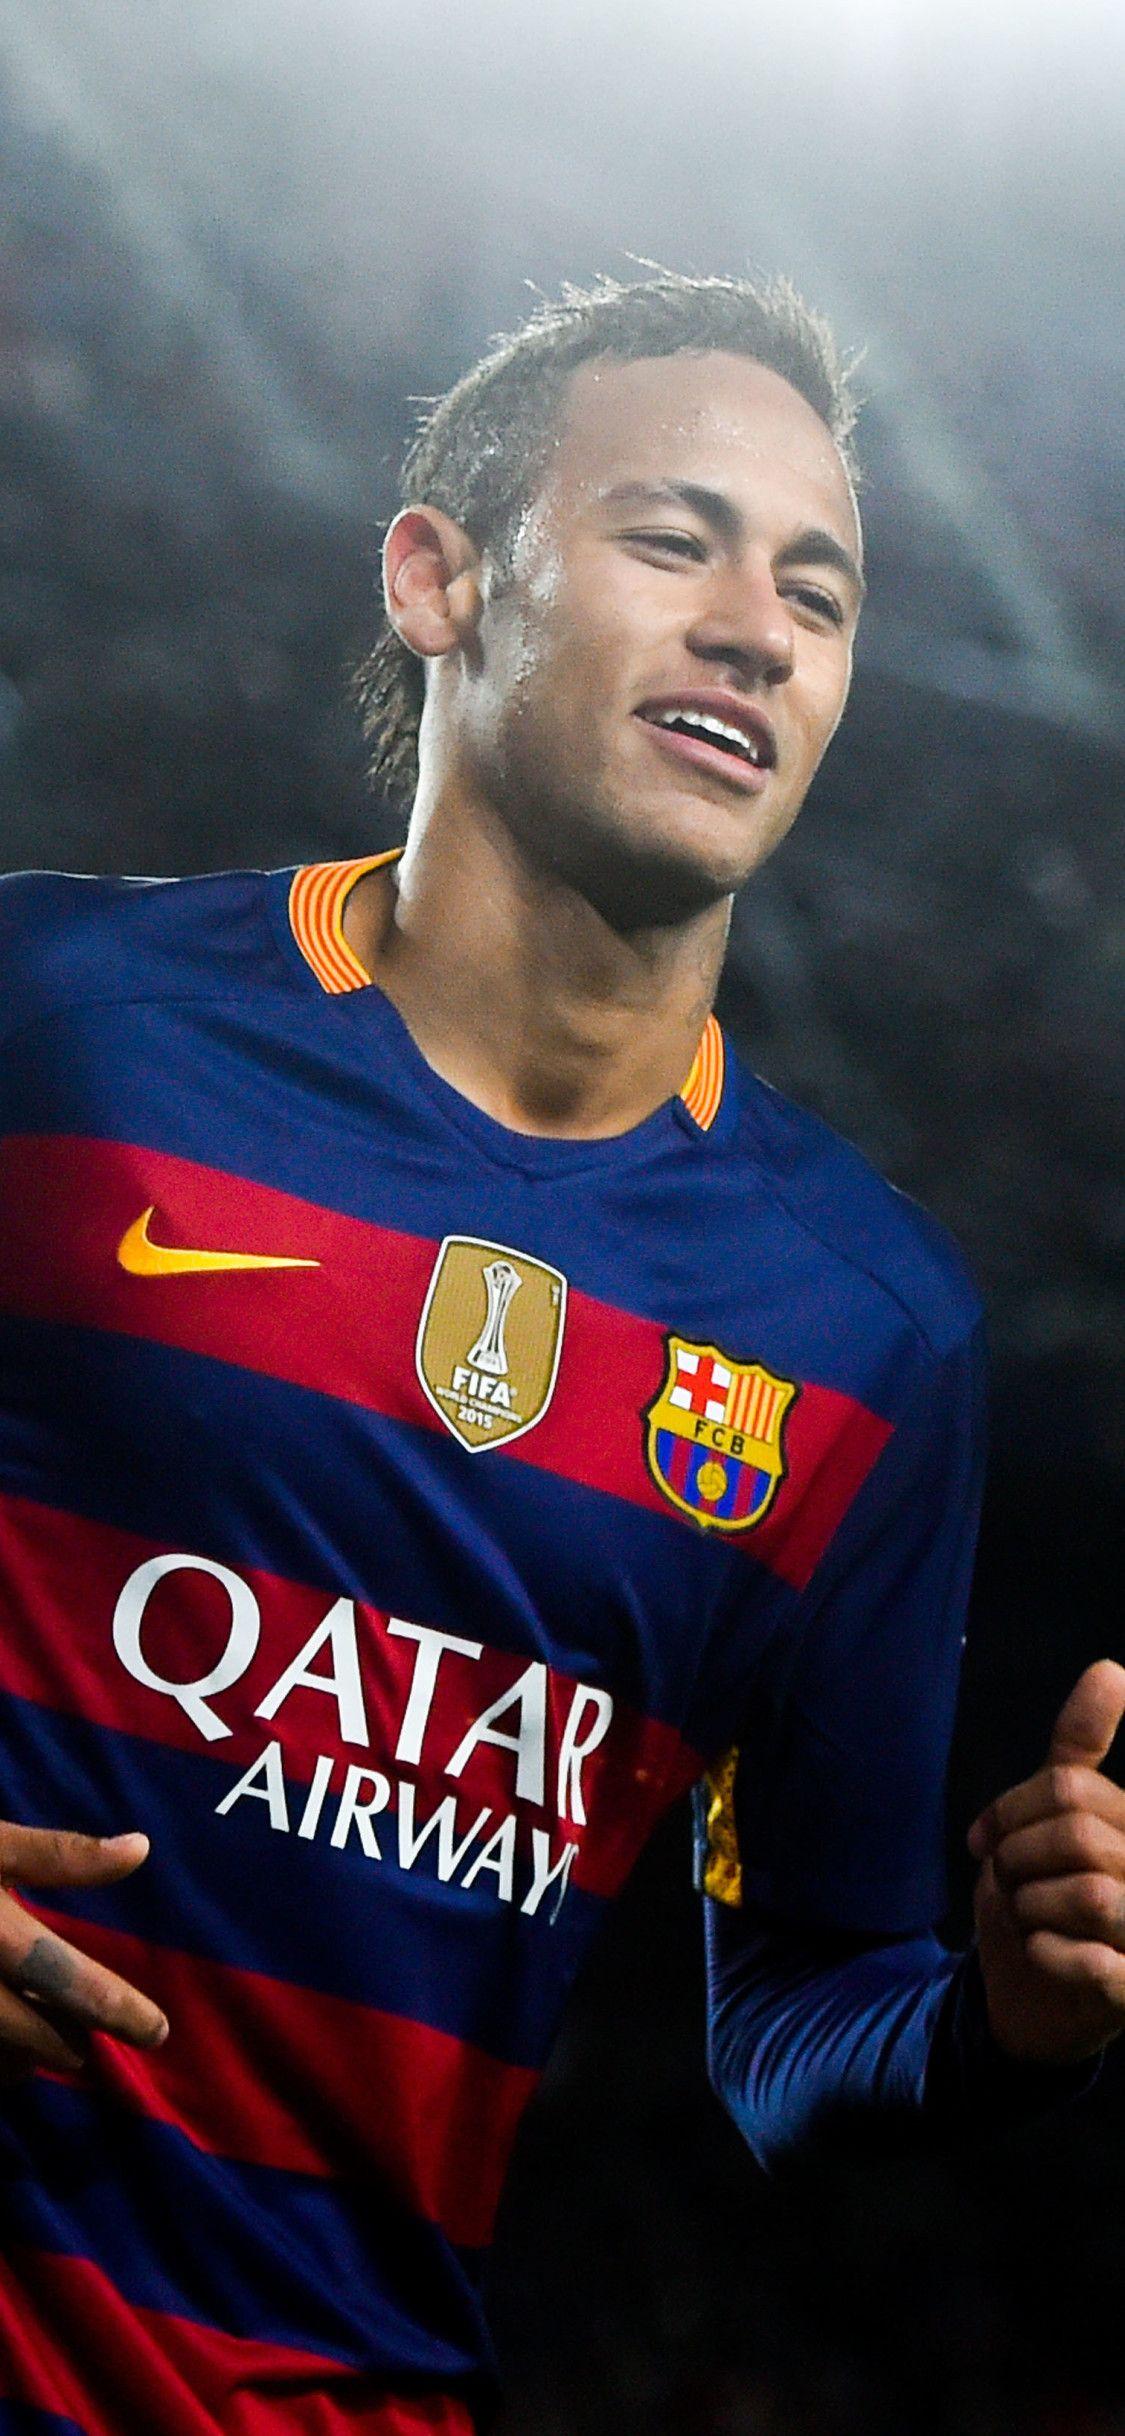 Bạn đang sở hữu iPhone? Đừng bỏ qua cơ hội để thể hiện sự đam mê bóng đá của mình với những hình nền Neymar độc đáo. Tốt nhất trong số những lựa chọn của bạn sẽ là những hình nền Neymar iPhone khiến cho chiếc điện thoại của bạn trở nên đặc biệt hơn.